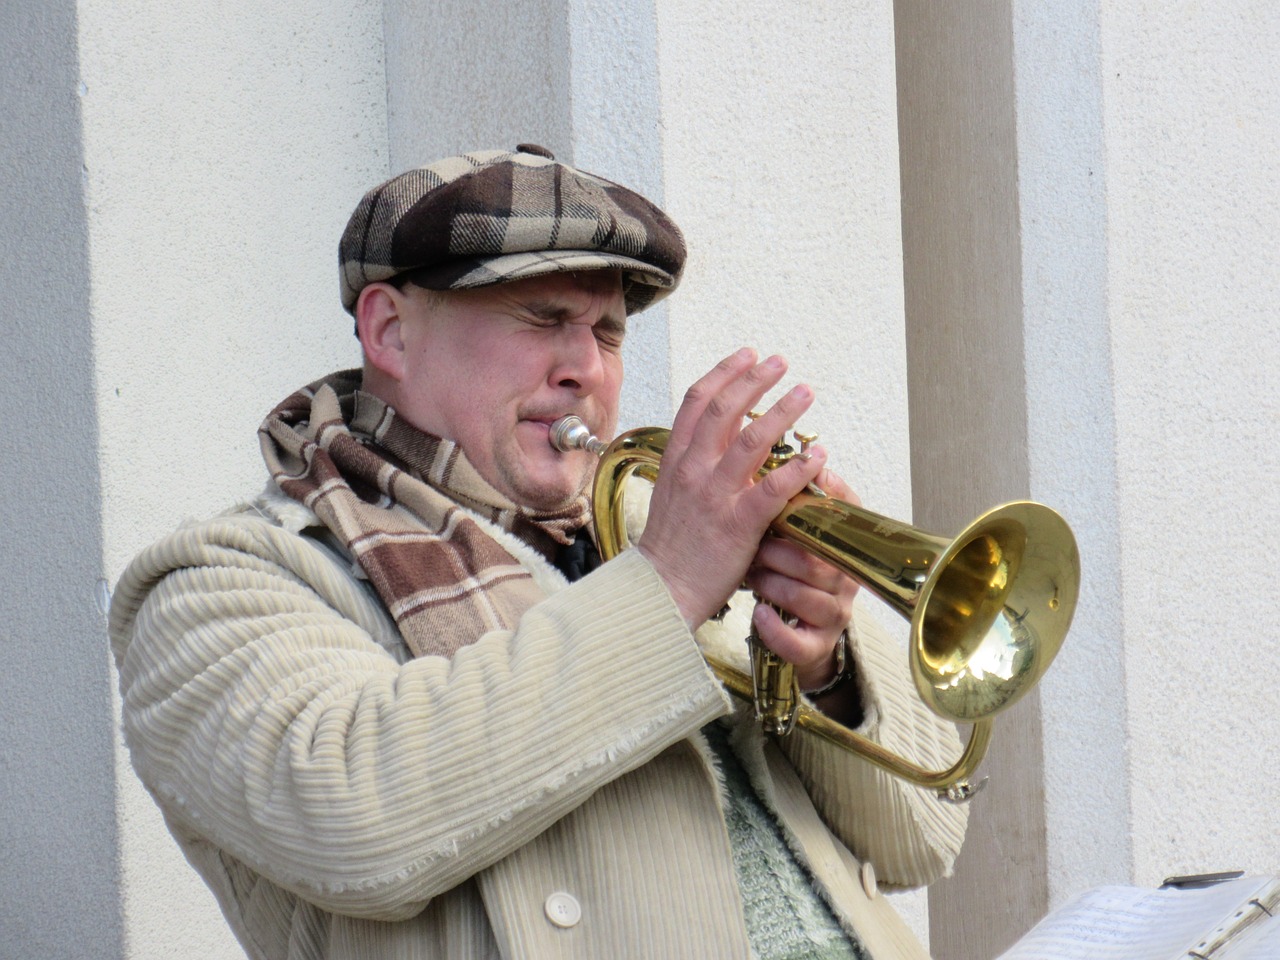 trumpeter-590380_1280 (c) rkit (www.pixabay.de)